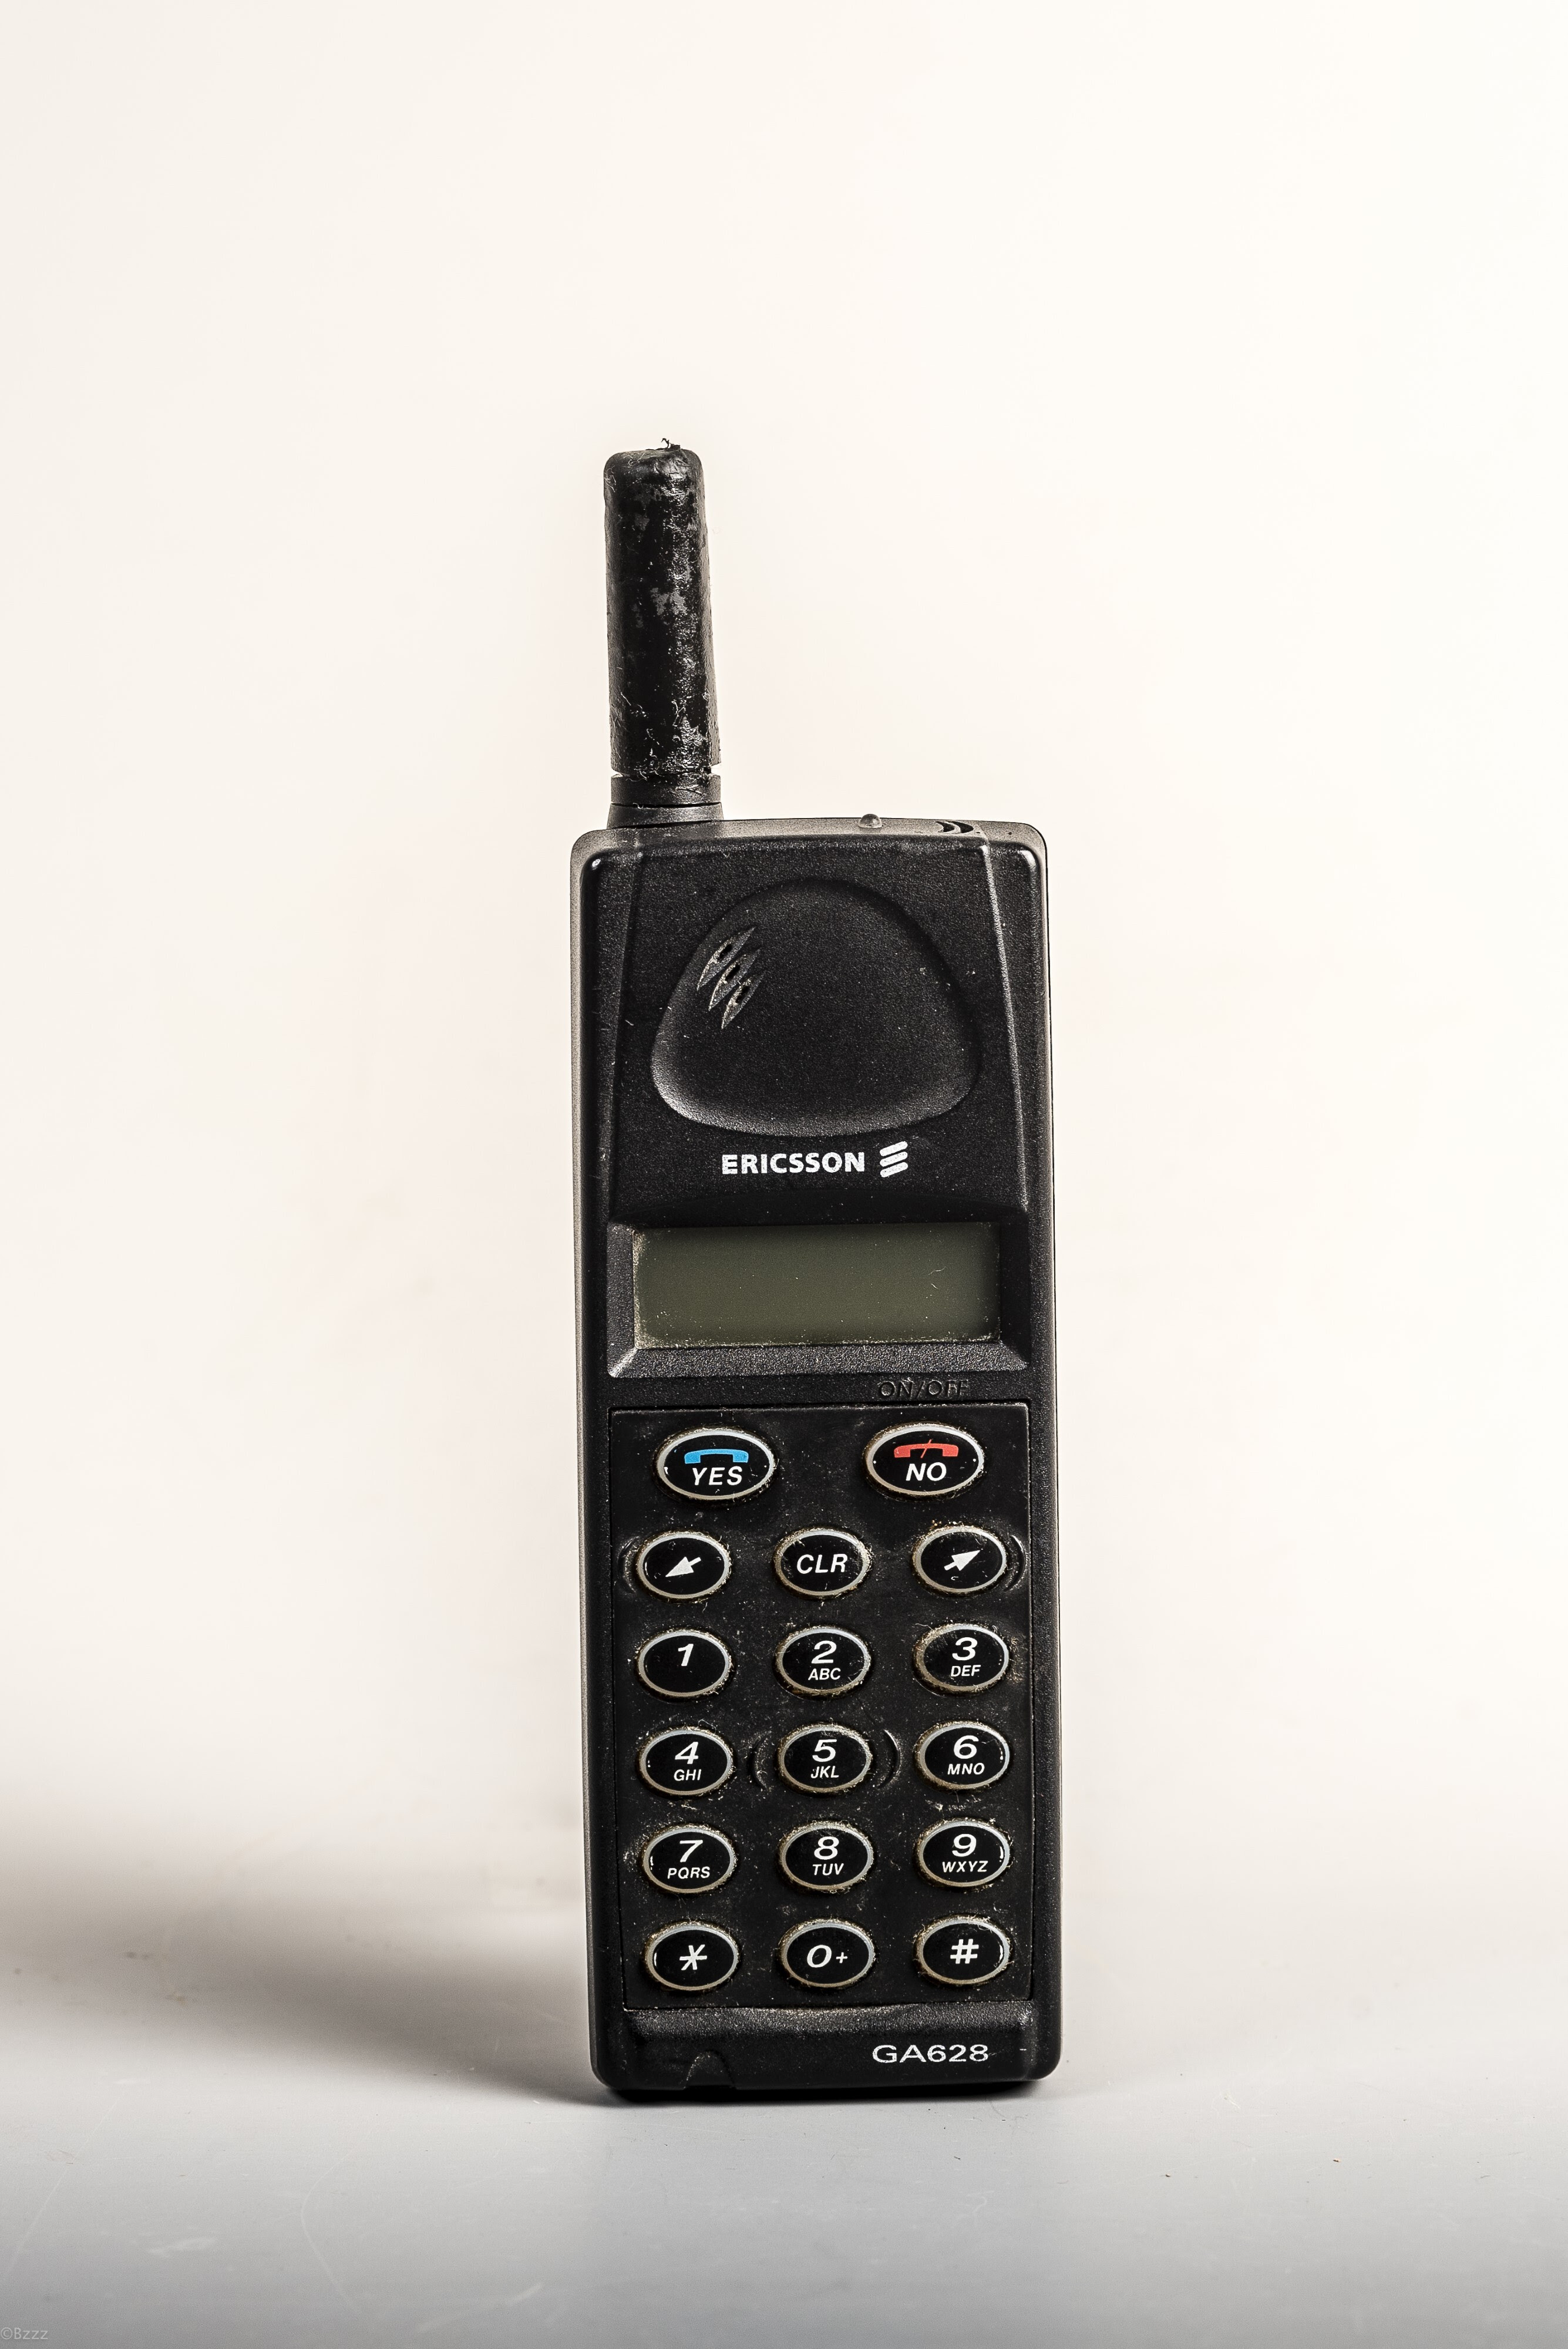 Ericsson GA628, eden izmed cenovno dostopnih in posledično popularnih mobilnih telefonov pri nas.